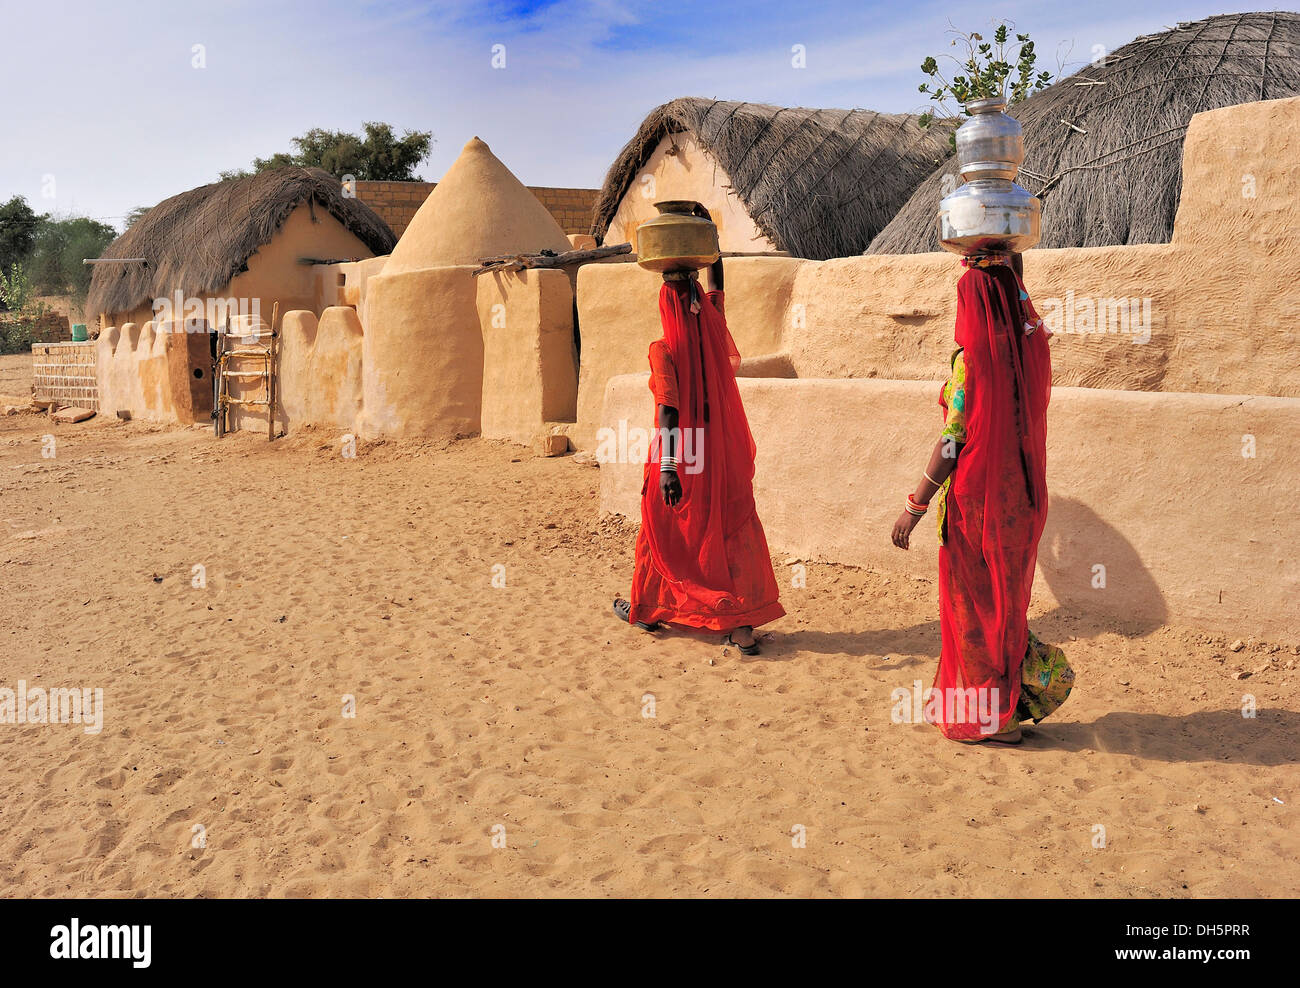 Zwei indische Frauen tragen rote Saris tragen von Wasser gefüllten Krügen auf dem Kopf durch ein Dorf, Thar-Wüste, Rajasthan, Indien Stockfoto